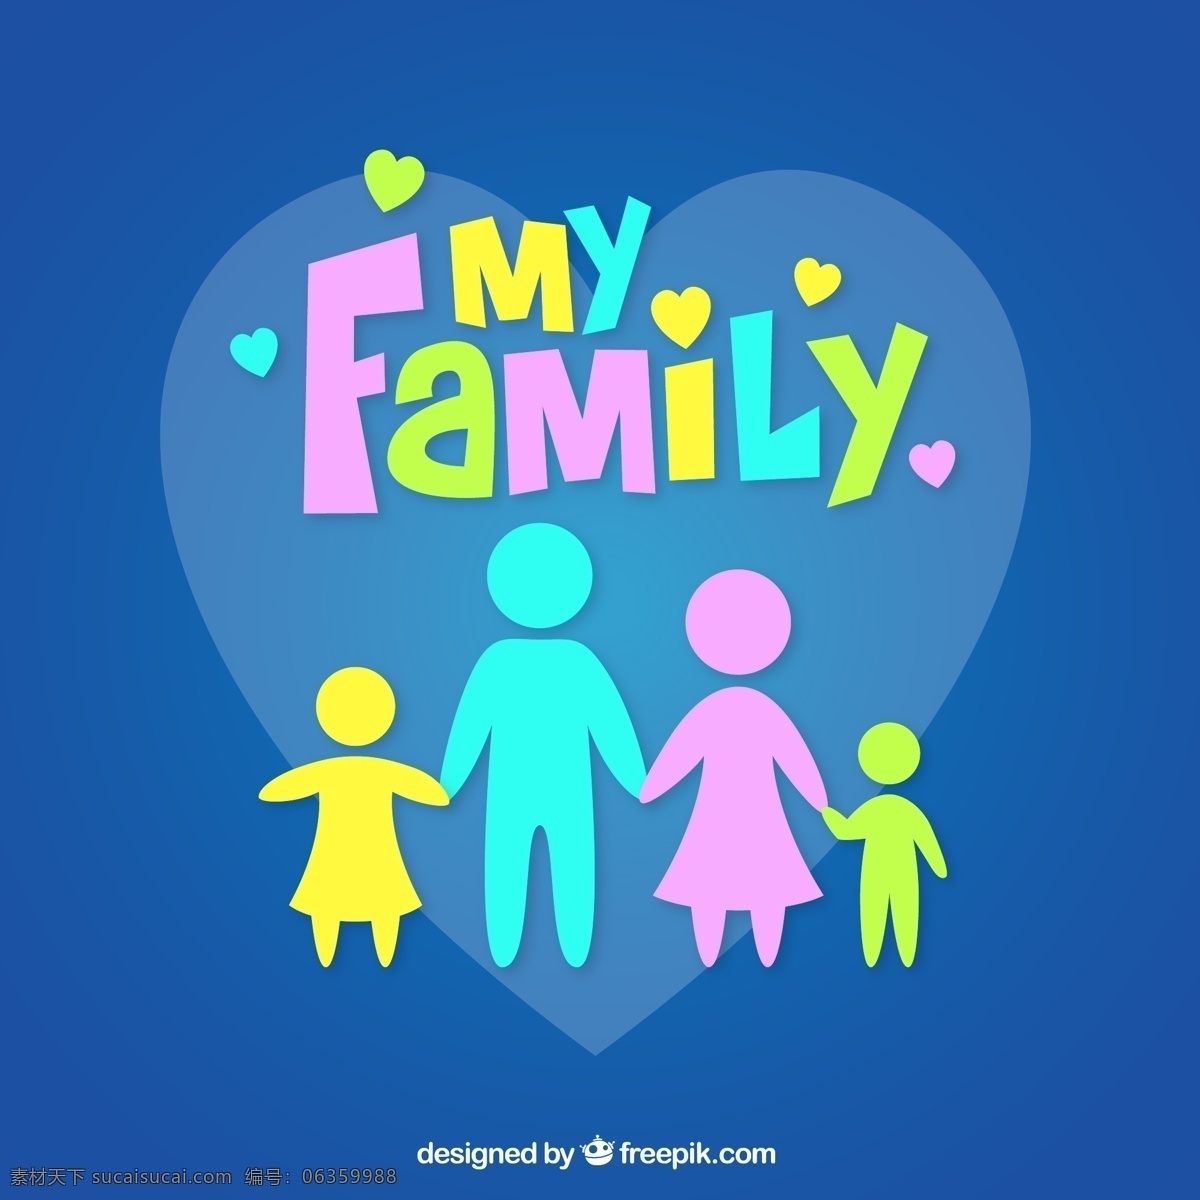 彩色 我的家 人物 矢量图 设计矢量图 温馨 幸福 蓝色